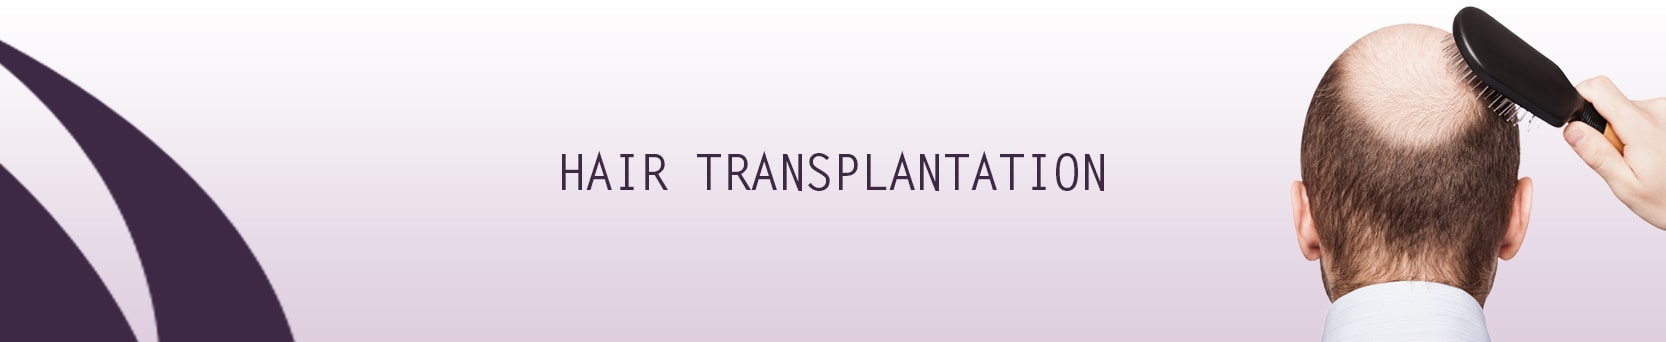 hair_transplantation